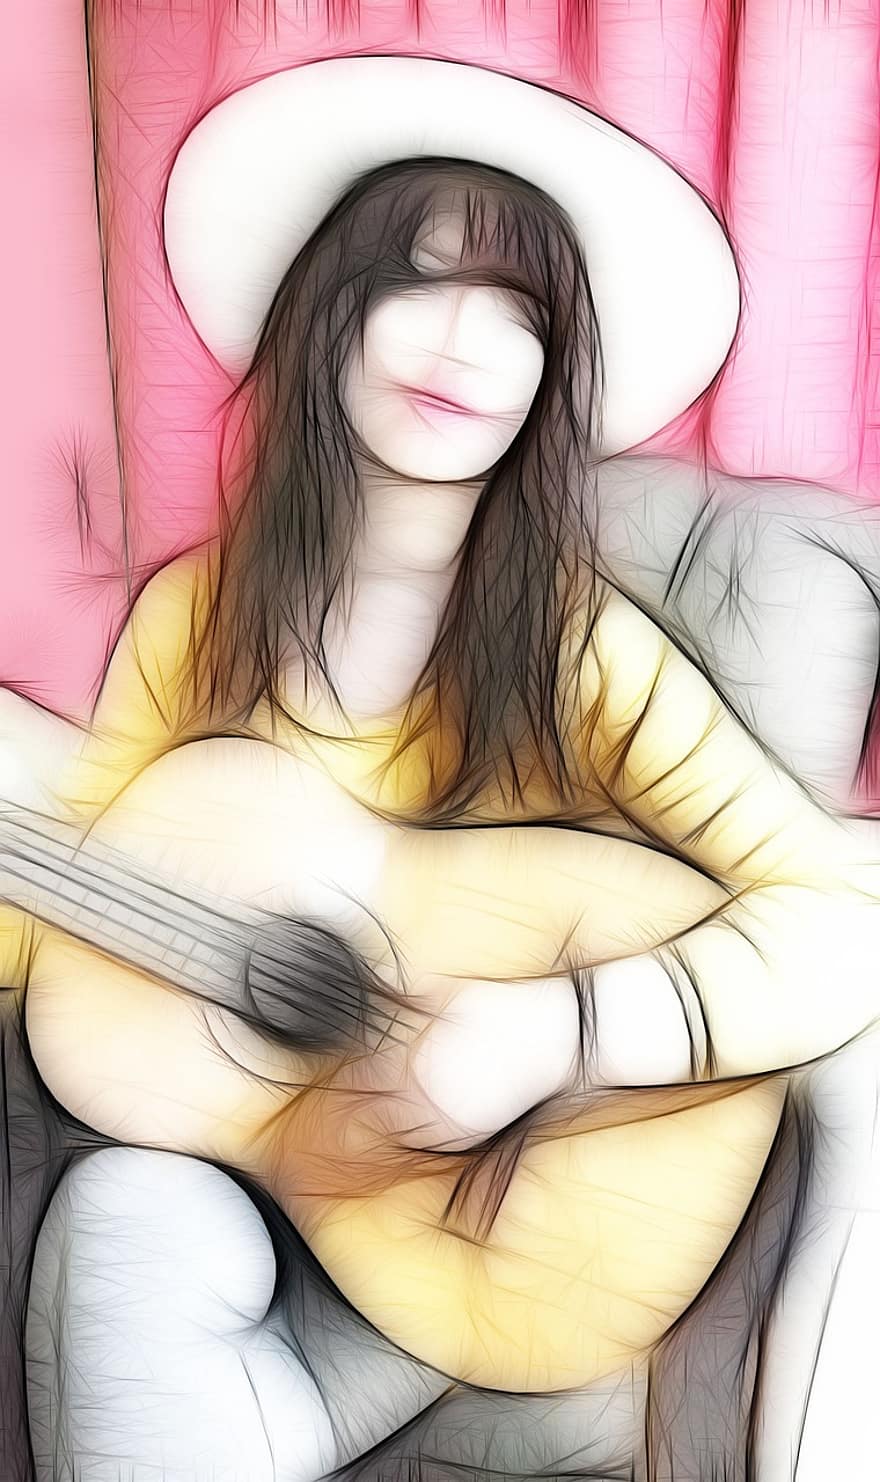 guitar, pige, musik, instrument, spiller guitar, musikinstrument, kvinde, musiker, hat